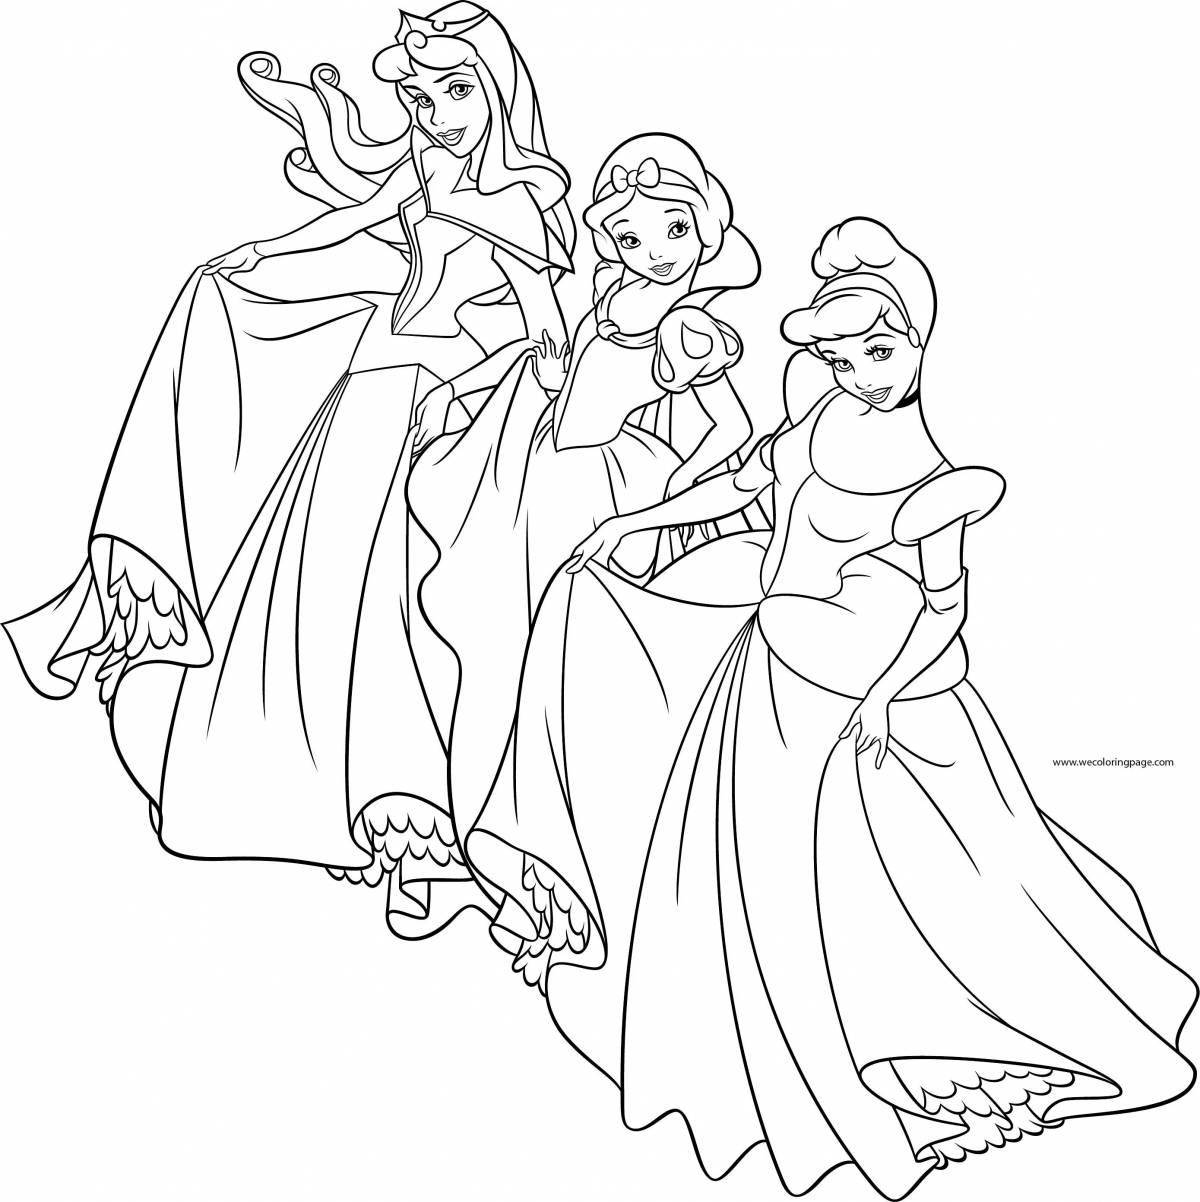 Wonderful coloring of all disney princesses